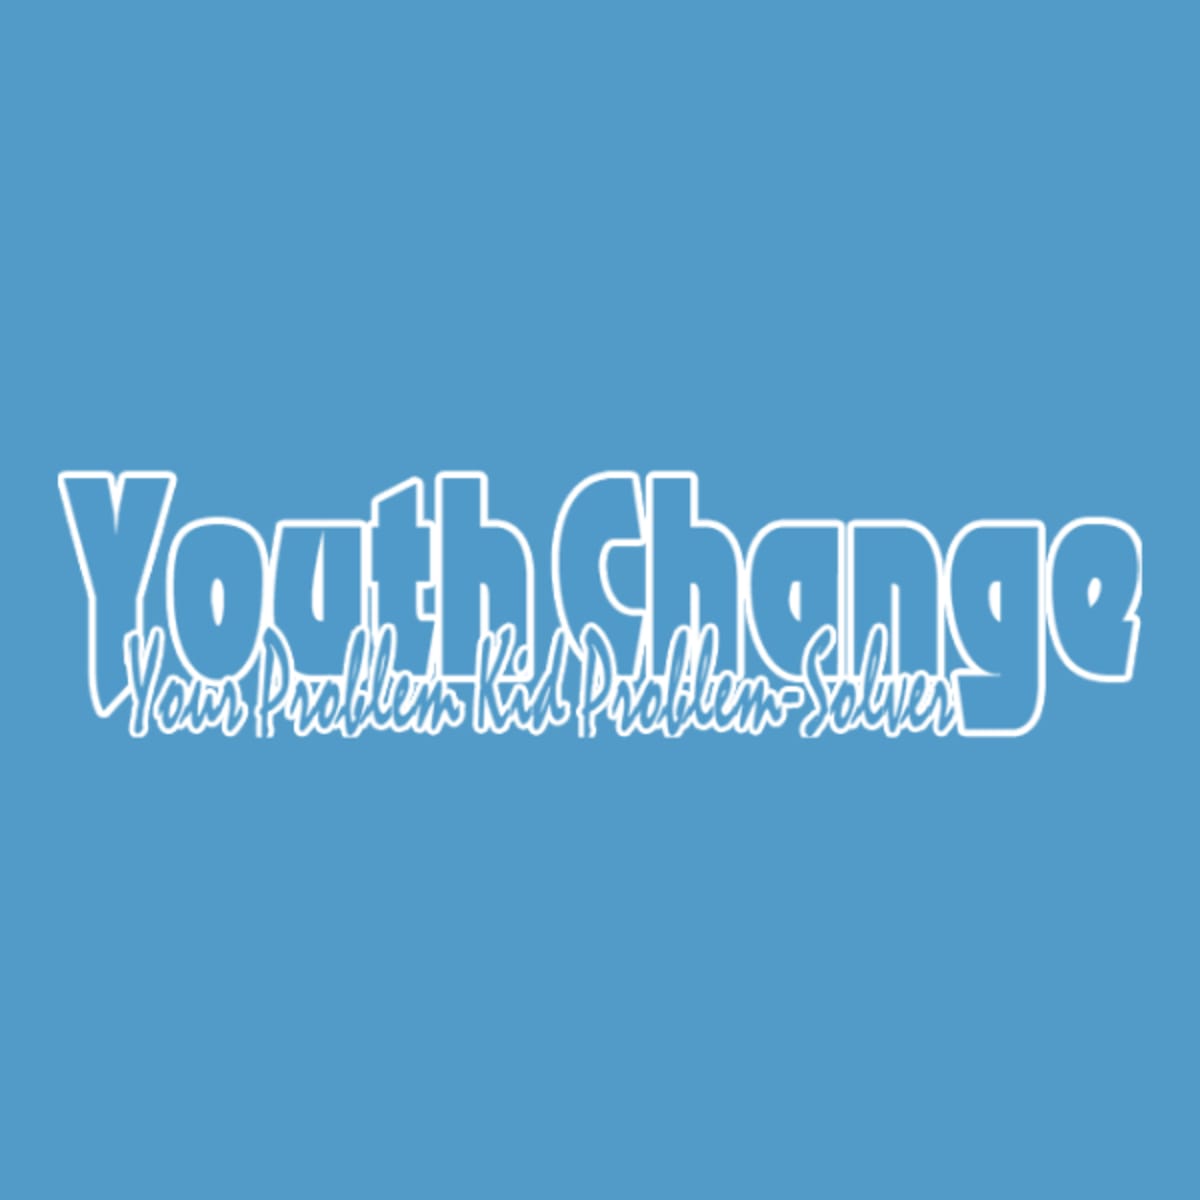 Youth Change Workshops logo partner